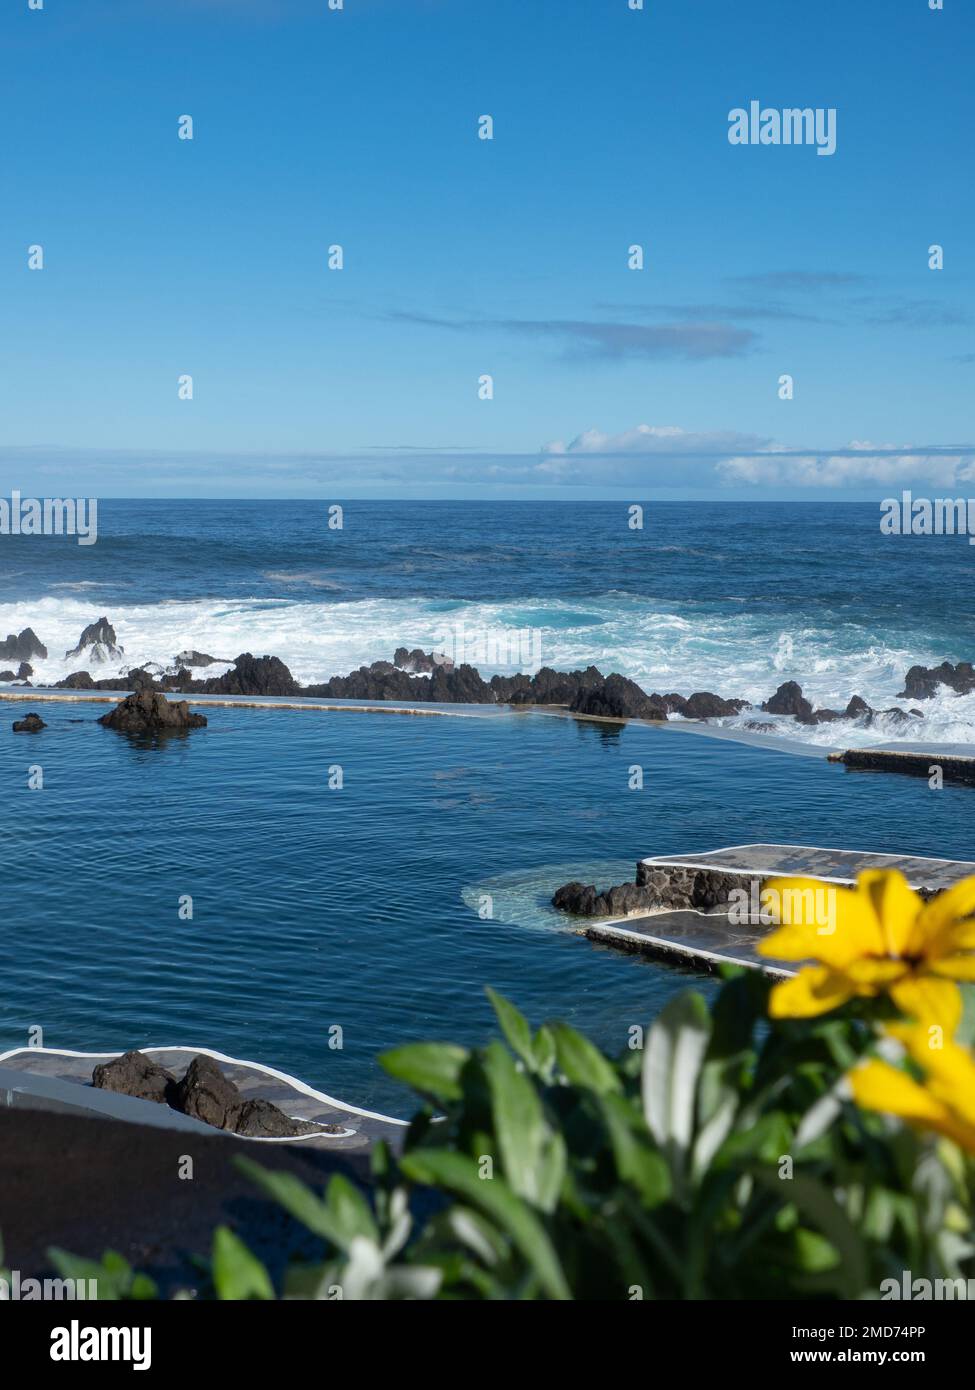 Die natürlichen Swimmingpools von Porto Moniz, Salzwasserpools, die in Lavaformationen des Ozeans auf Madeira, Portugal, geschaffen wurden Stockfoto